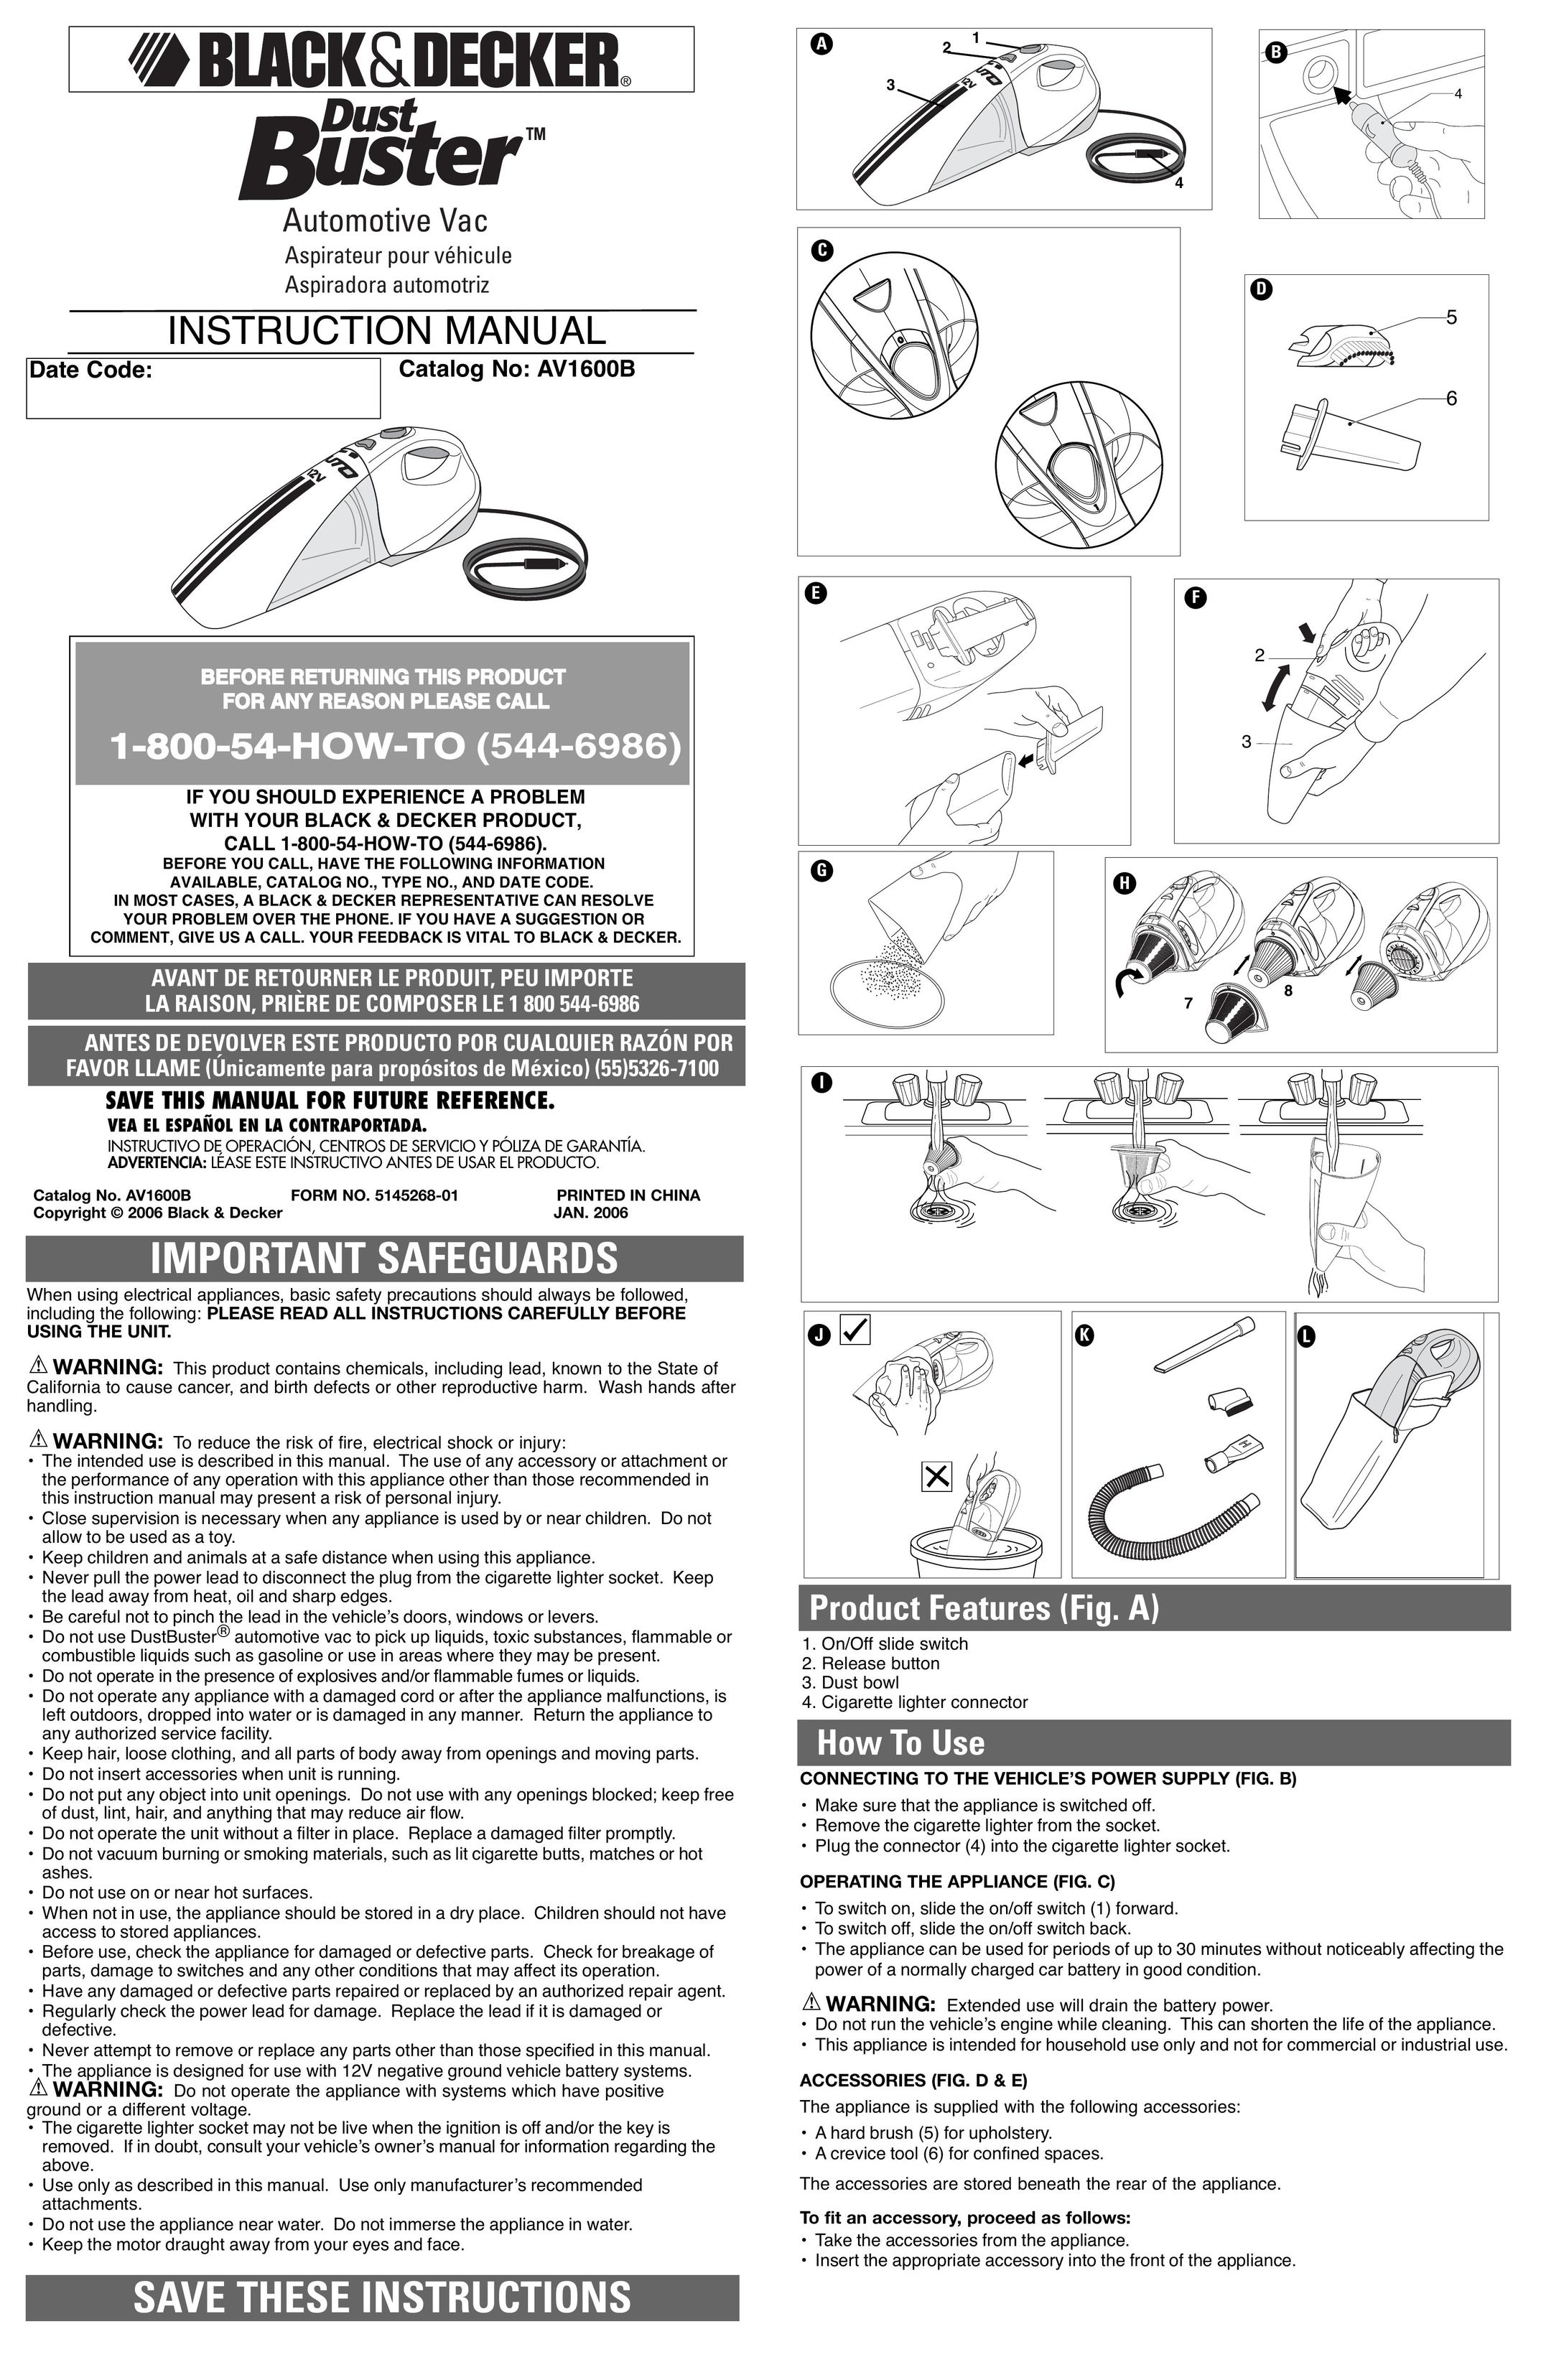 Black & Decker Av1600b Vacuum Cleaner User Manual